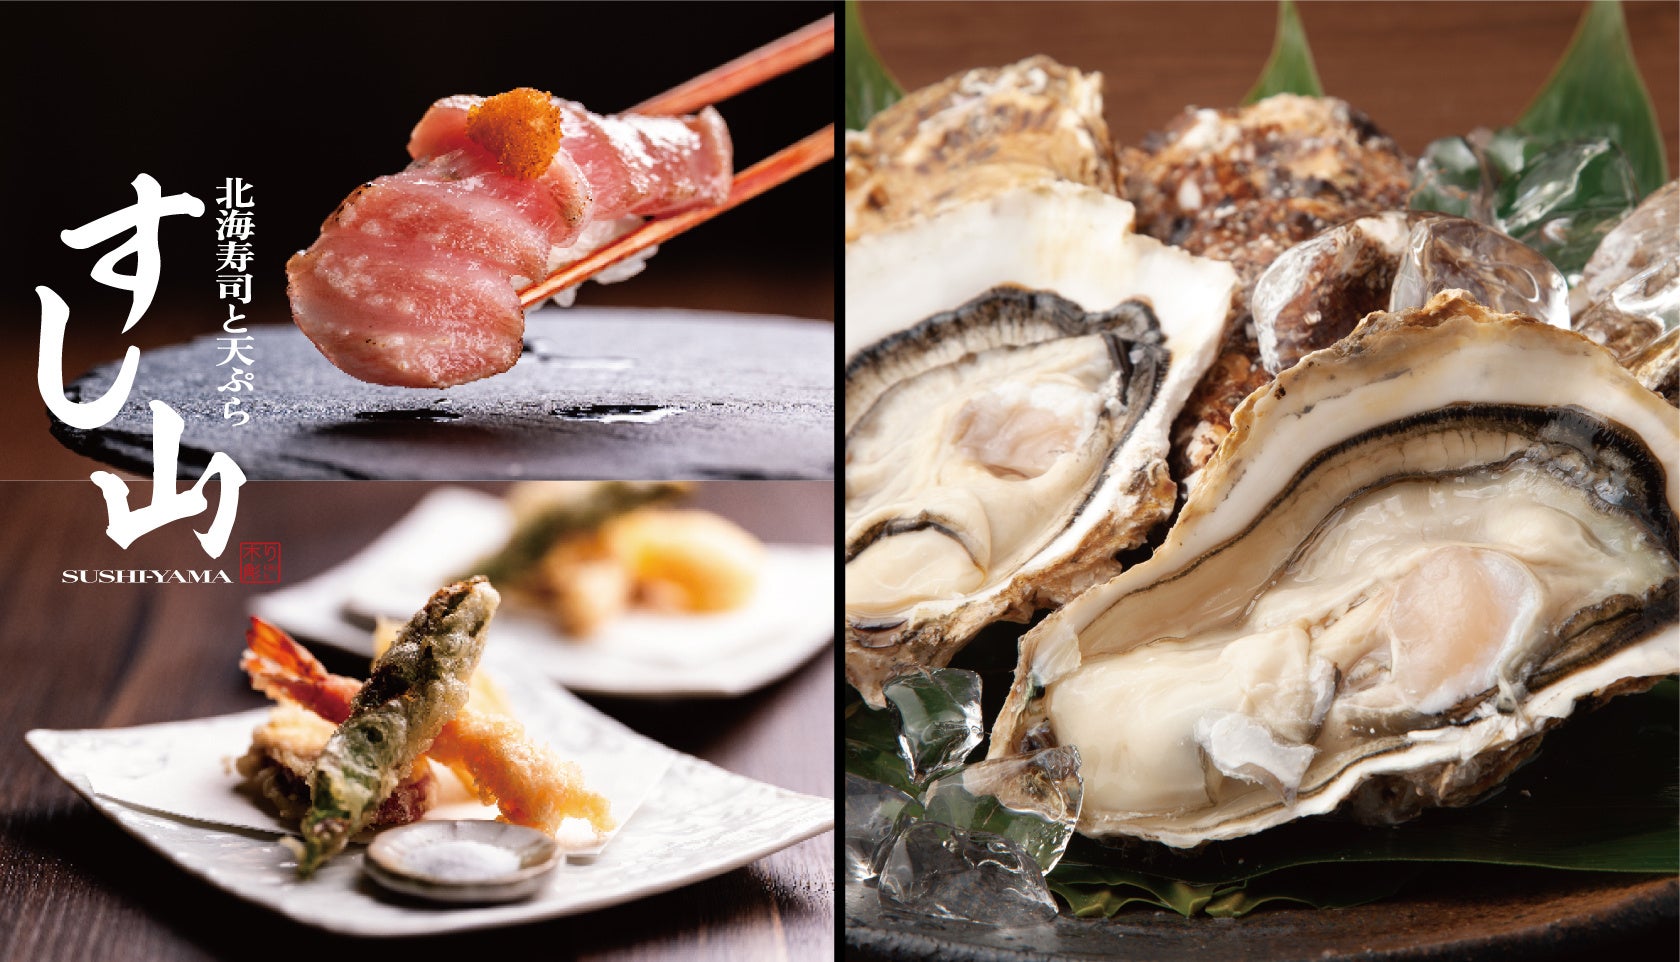 北海層の旬鮮魚も愉しめる「北海寿司と天ぷら すし山 新宿」にて、北海道噴火湾産のブランド牡蠣『秀峰』をプレゼント